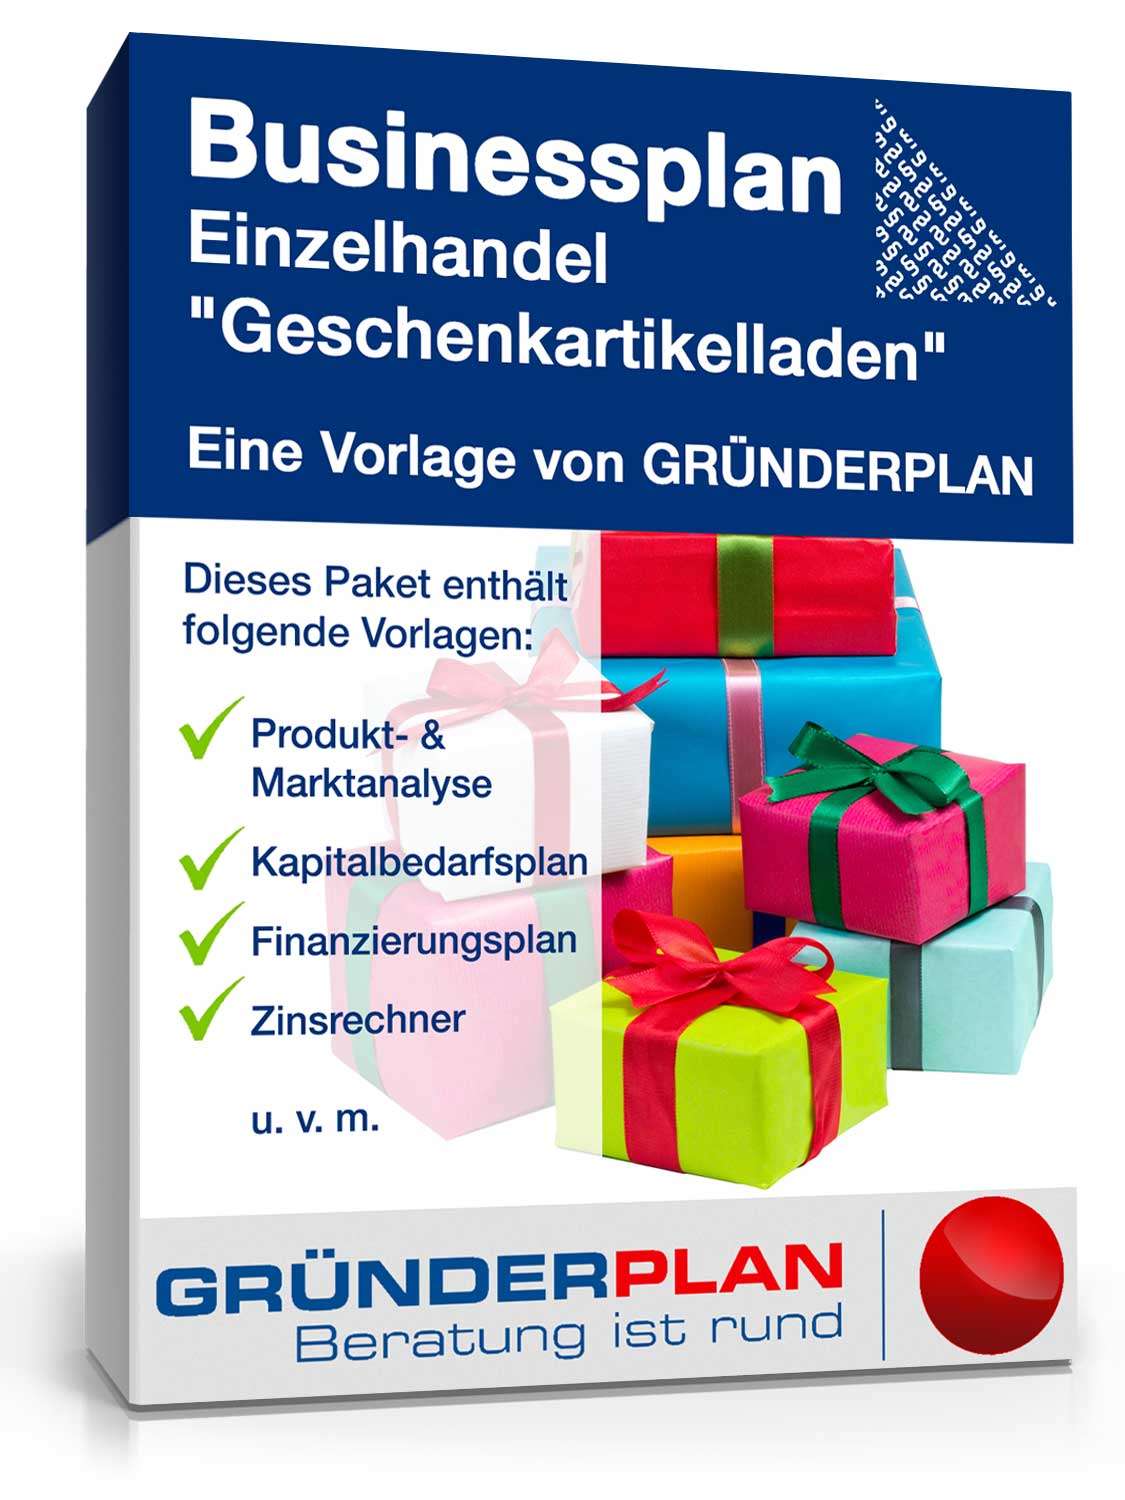 Hauptbild des Produkts: Businessplan Geschenkartikelladen von Gründerplan